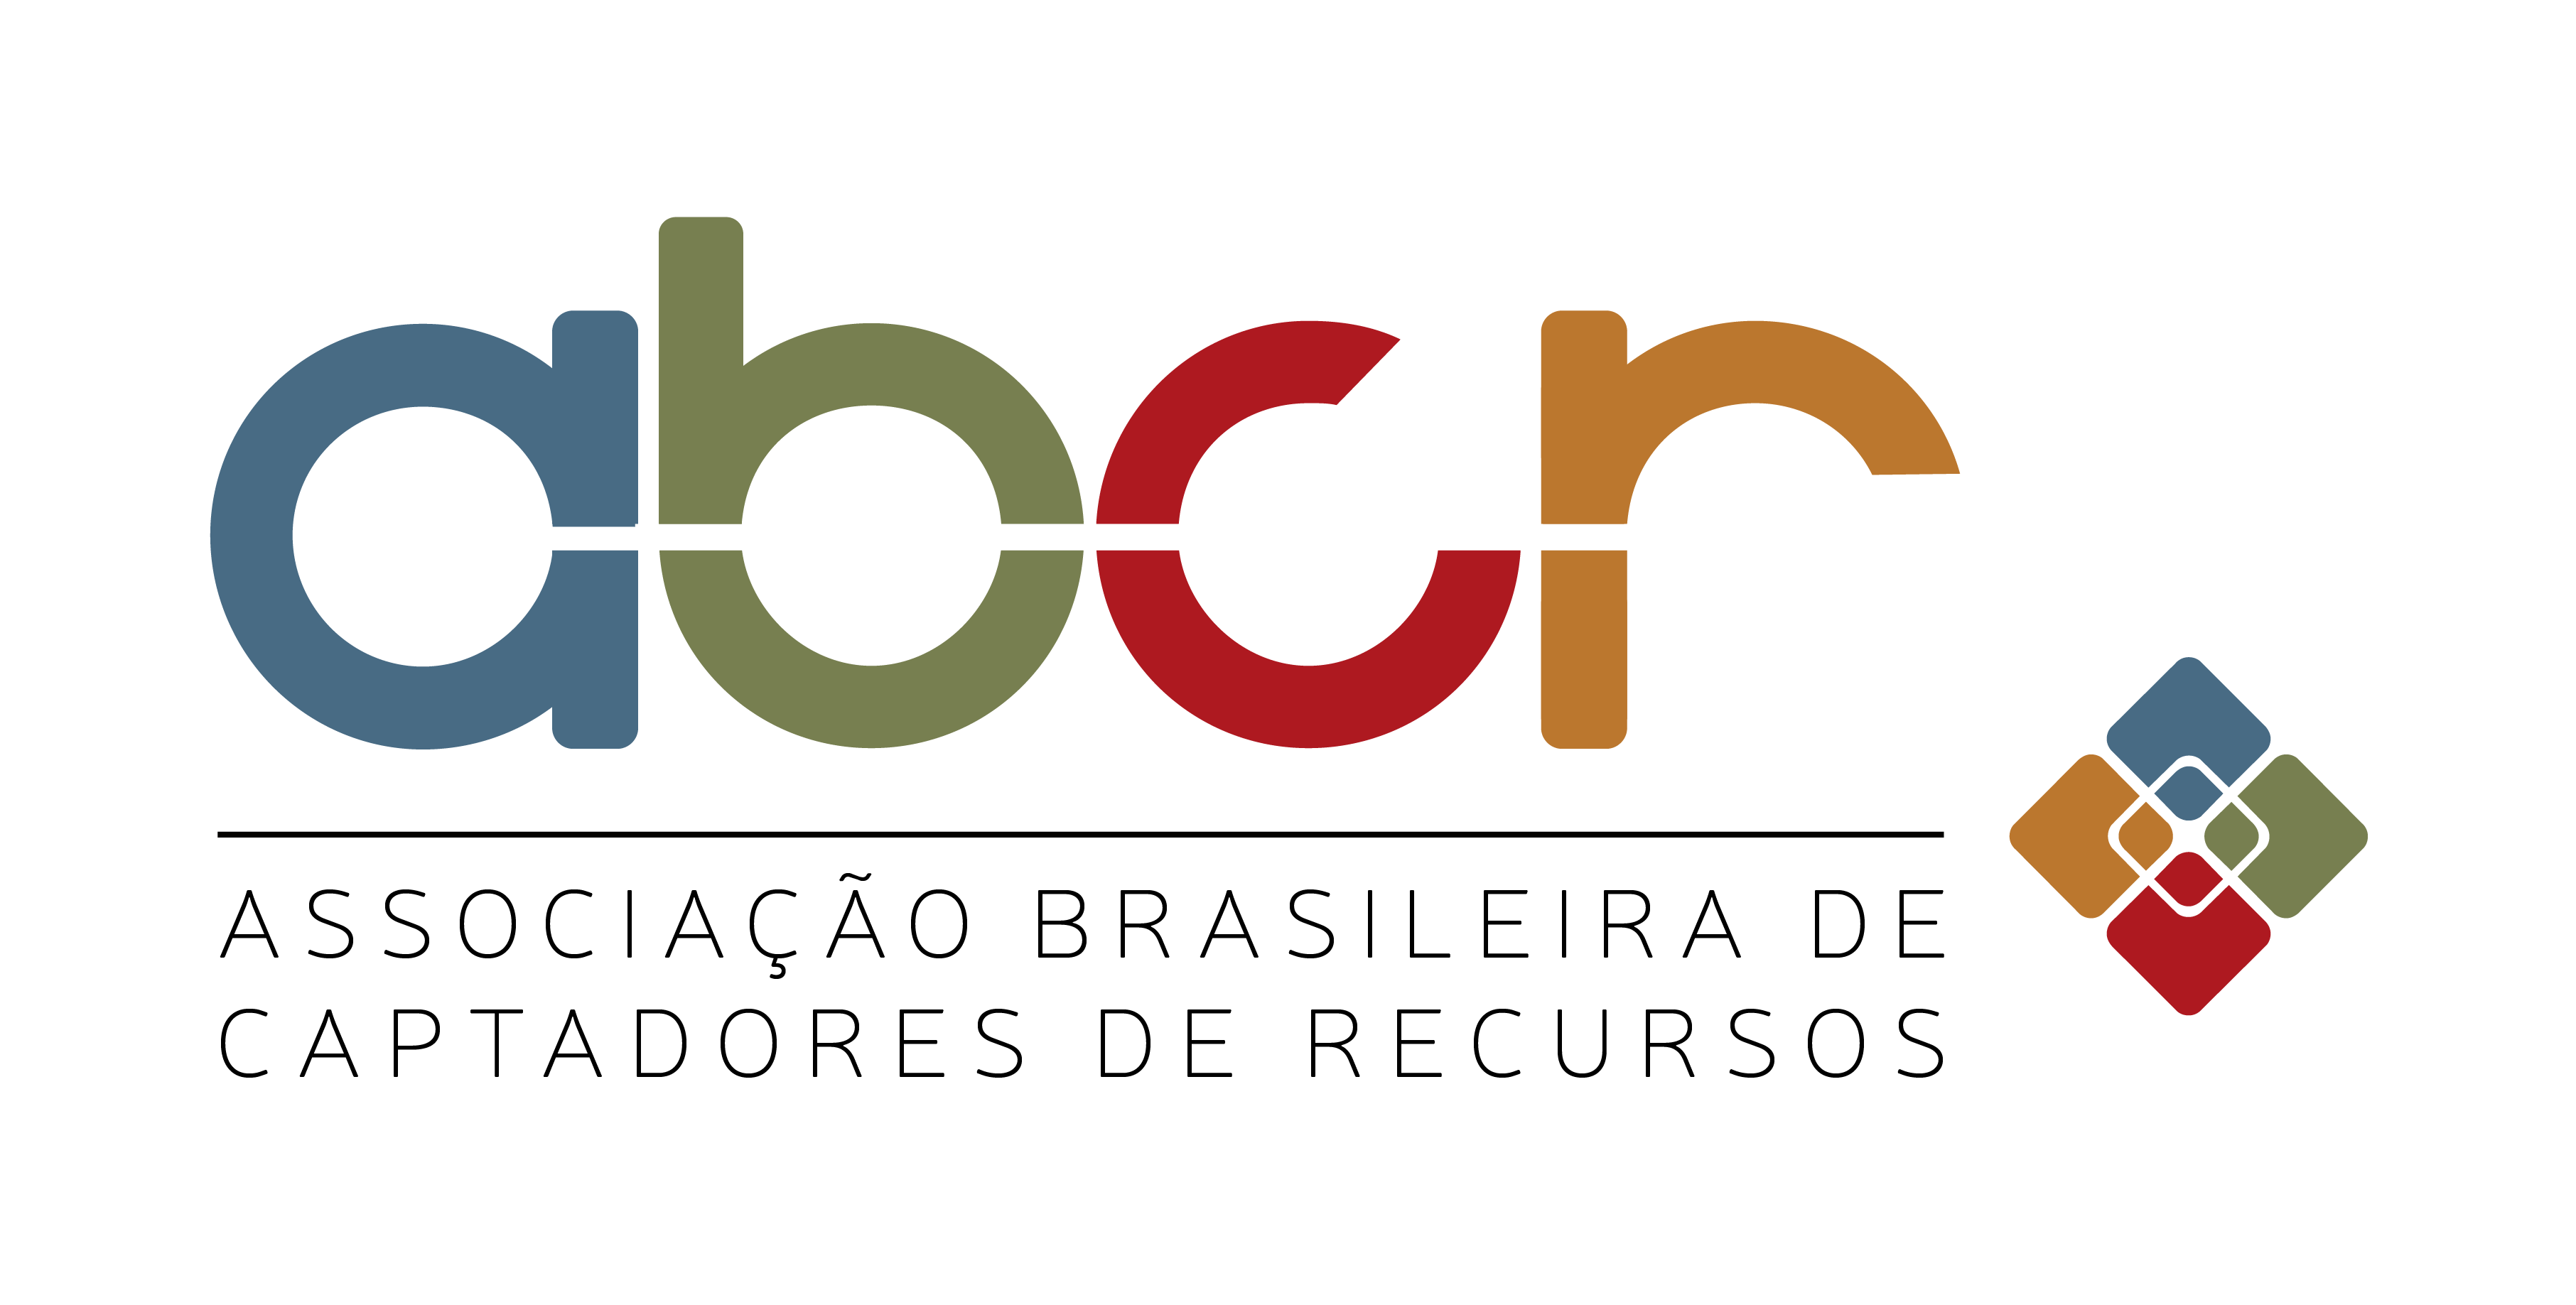 Associação Brasileira de Captadores de Recursos (ABCR)